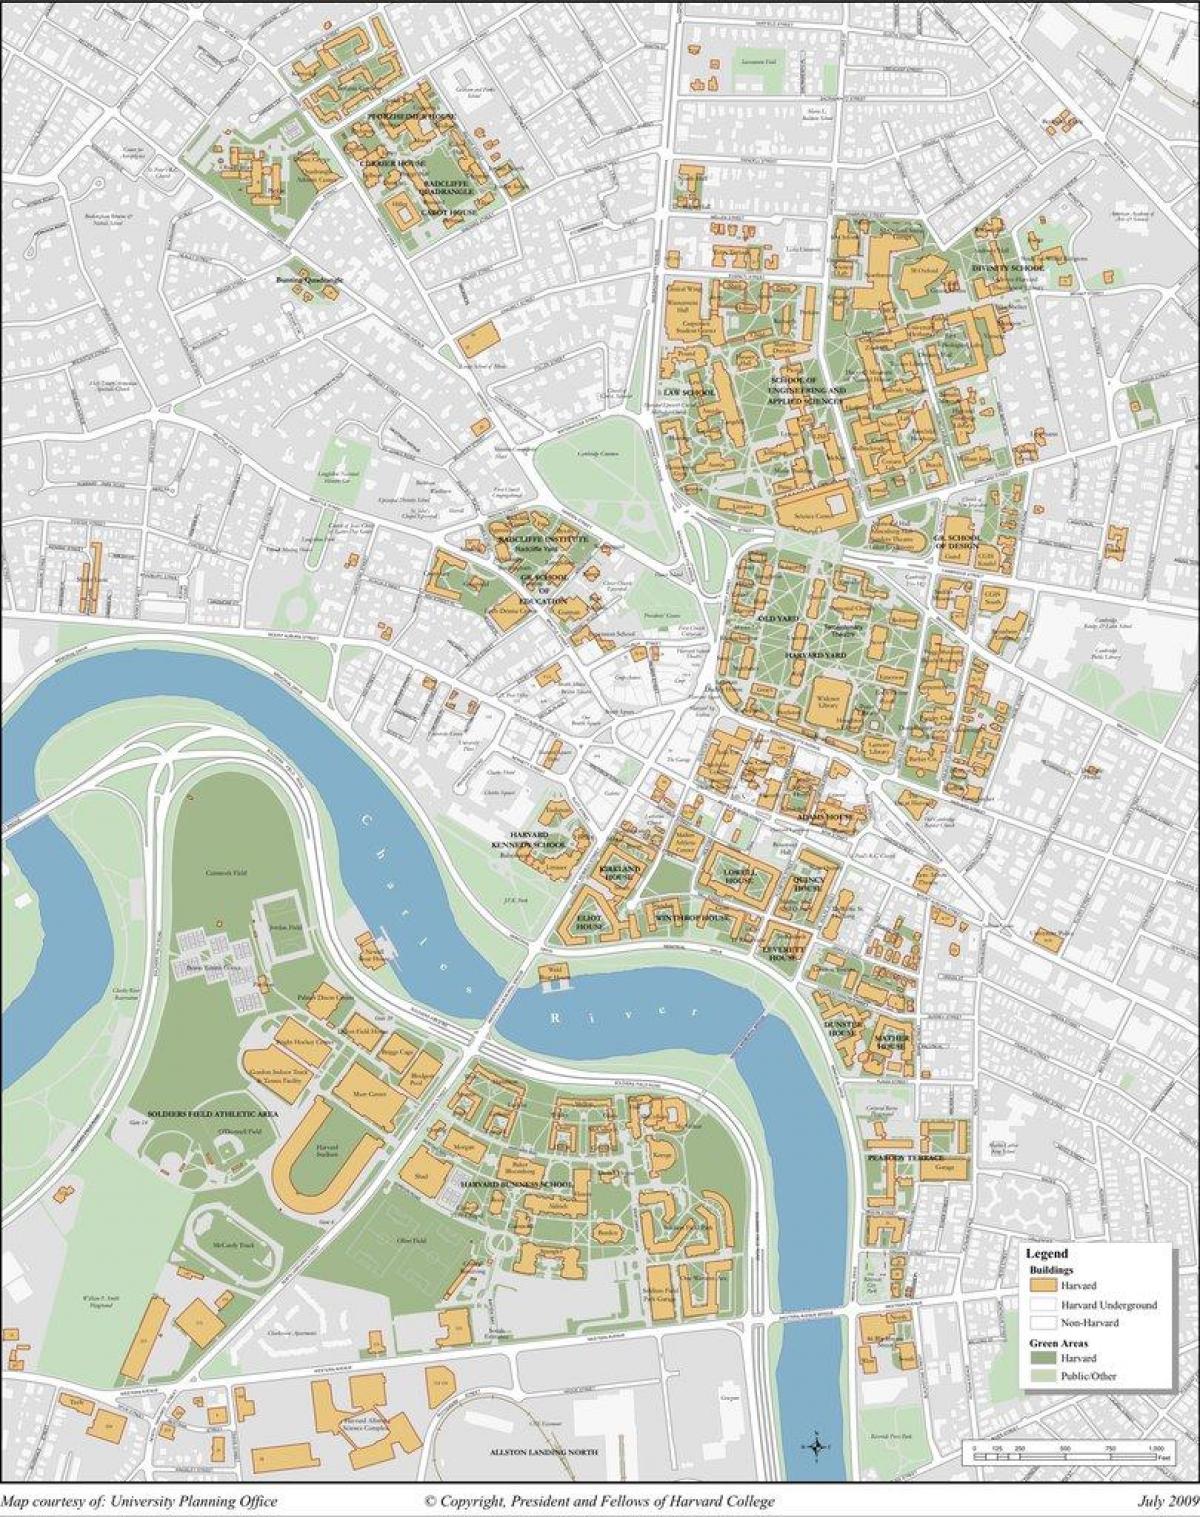 ہارورڈ یونیورسٹی کے کیمپس کا نقشہ